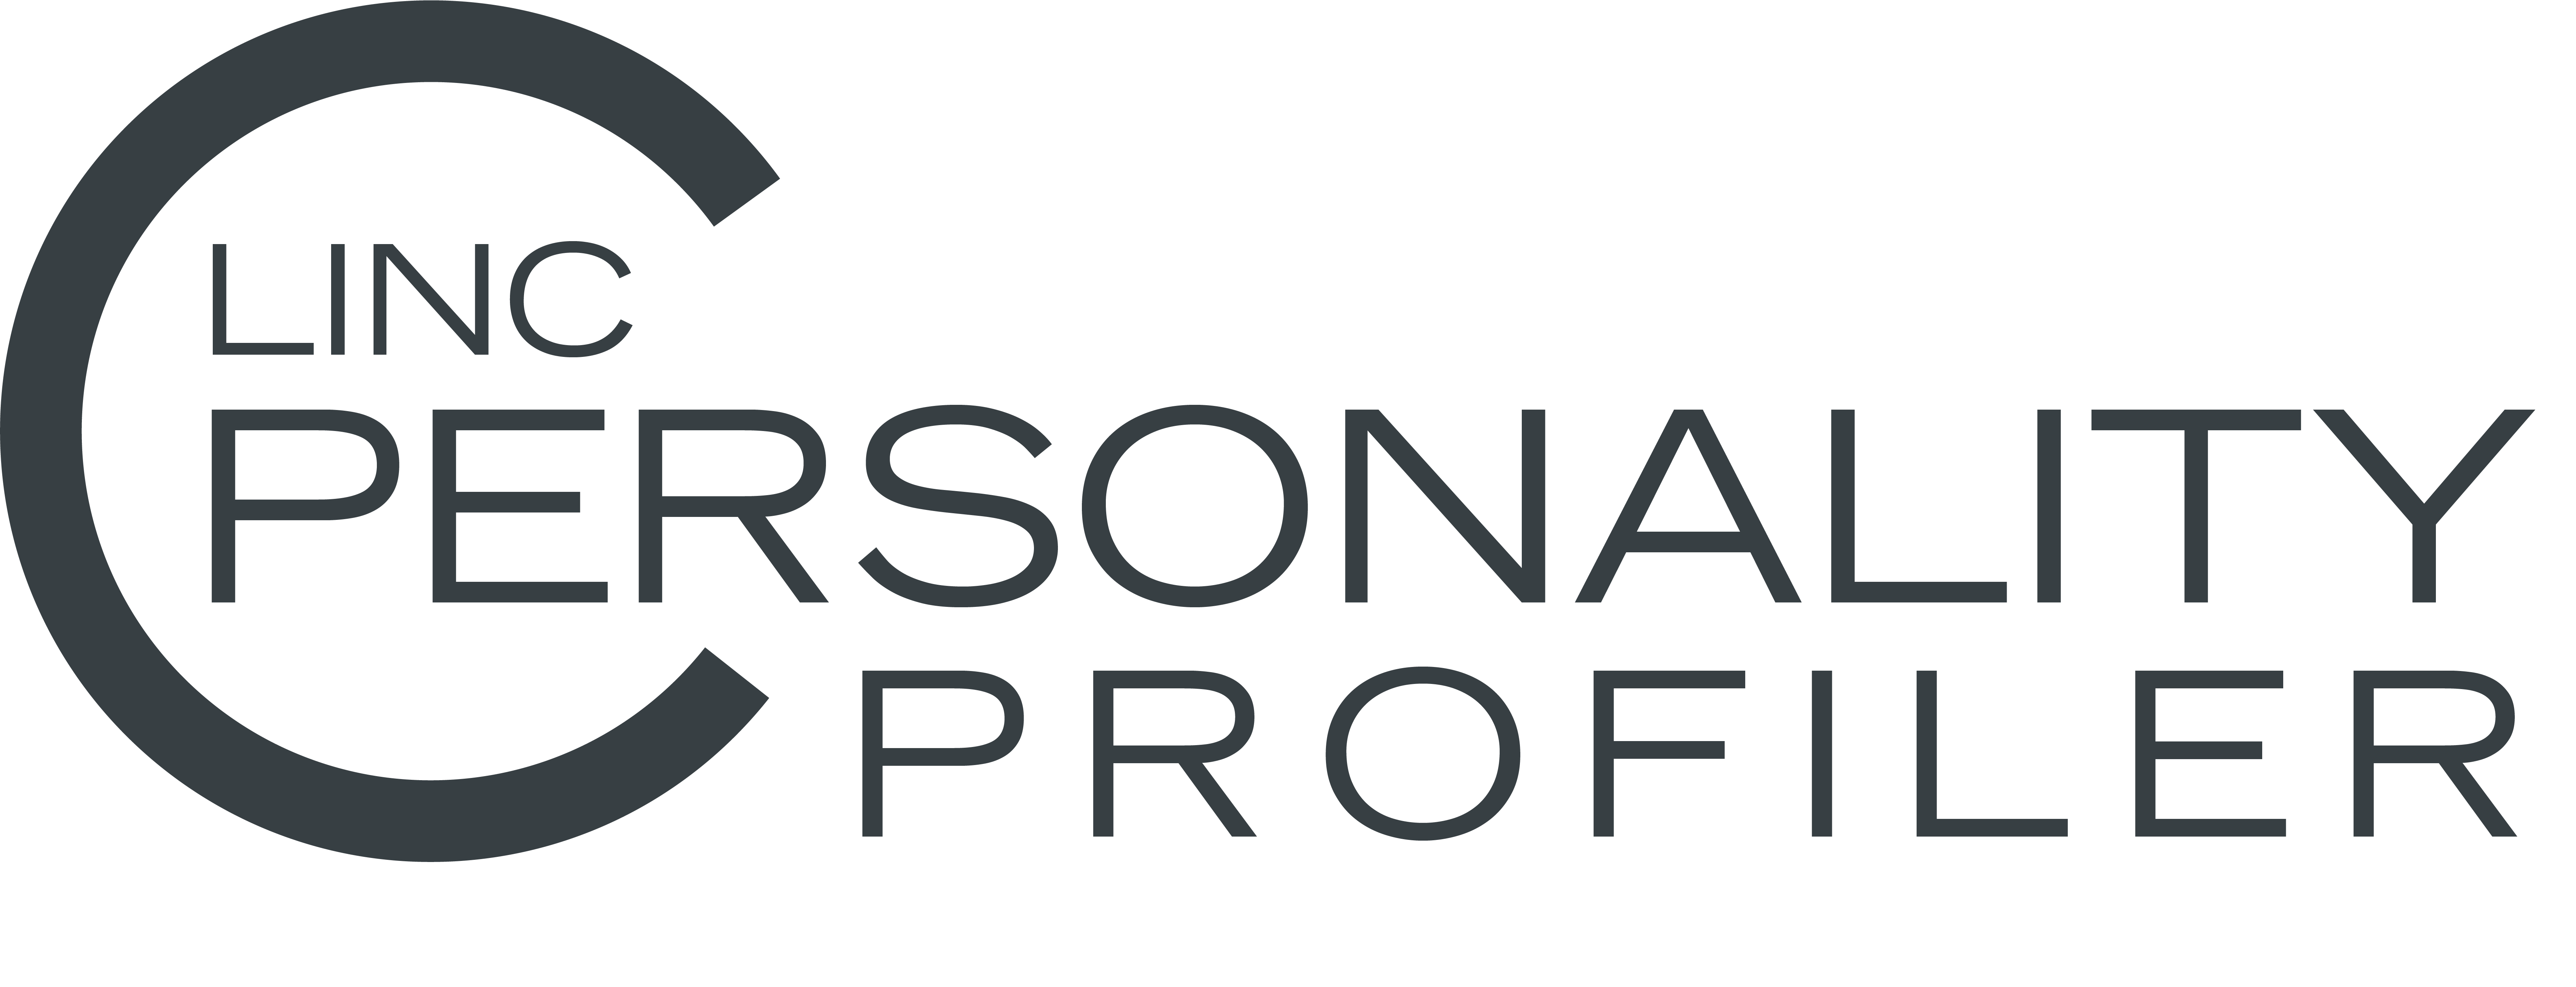 Der LINC Personality Profiler - die fundierte Persönlichkeitsanalyse mit Wumms.